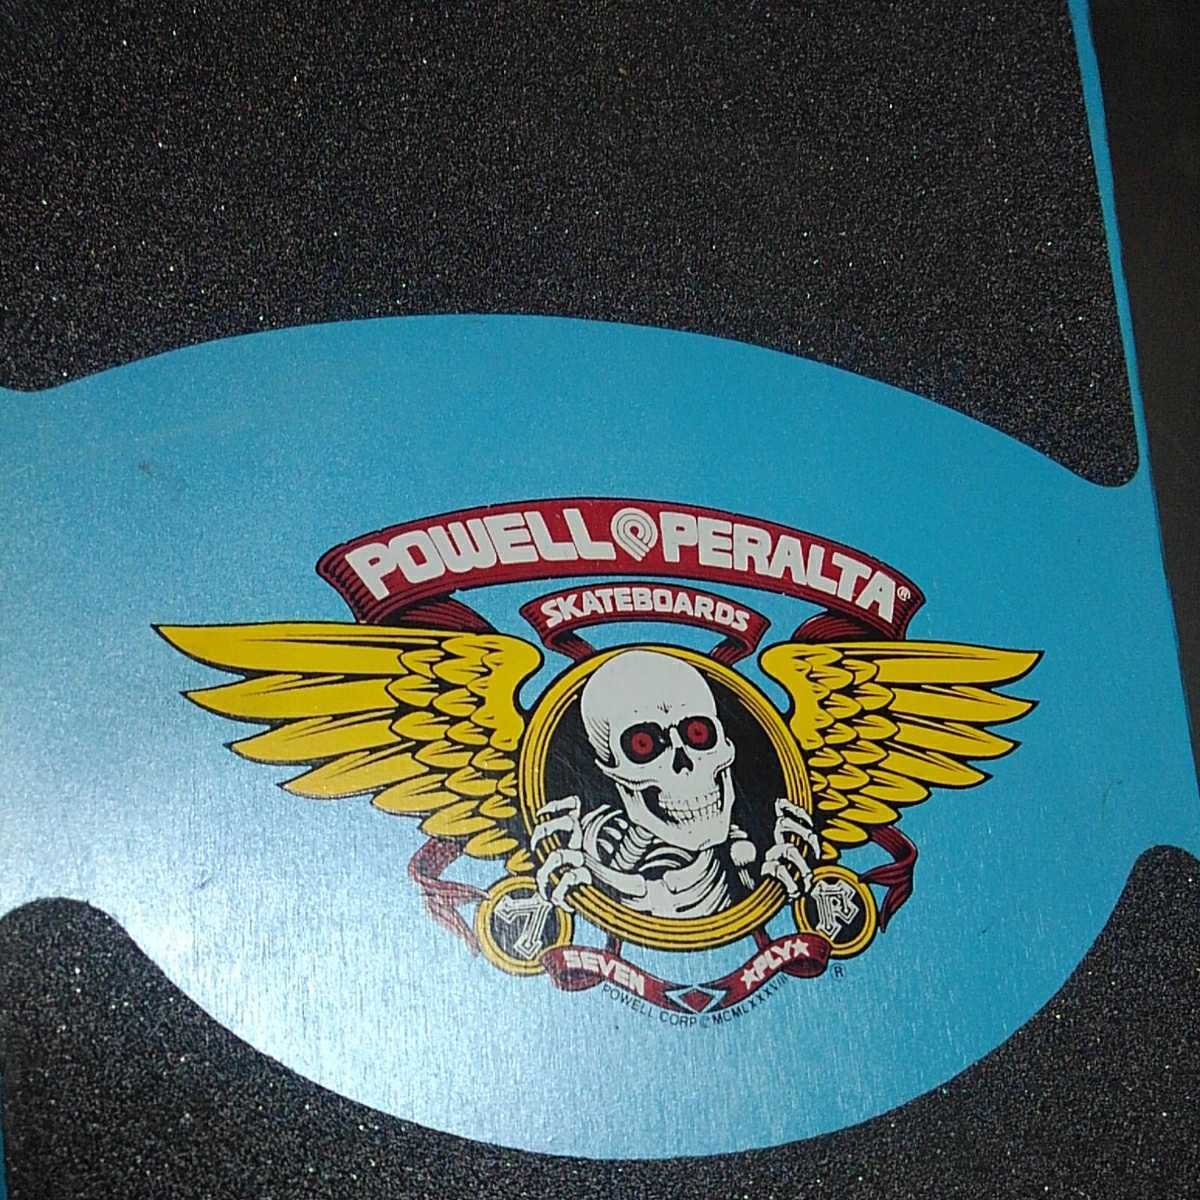 pa well POWELL CarVer CARVER скейтборд Surf skate вспышка направляющие Old school подлинная вещь retro Vintage редкий 